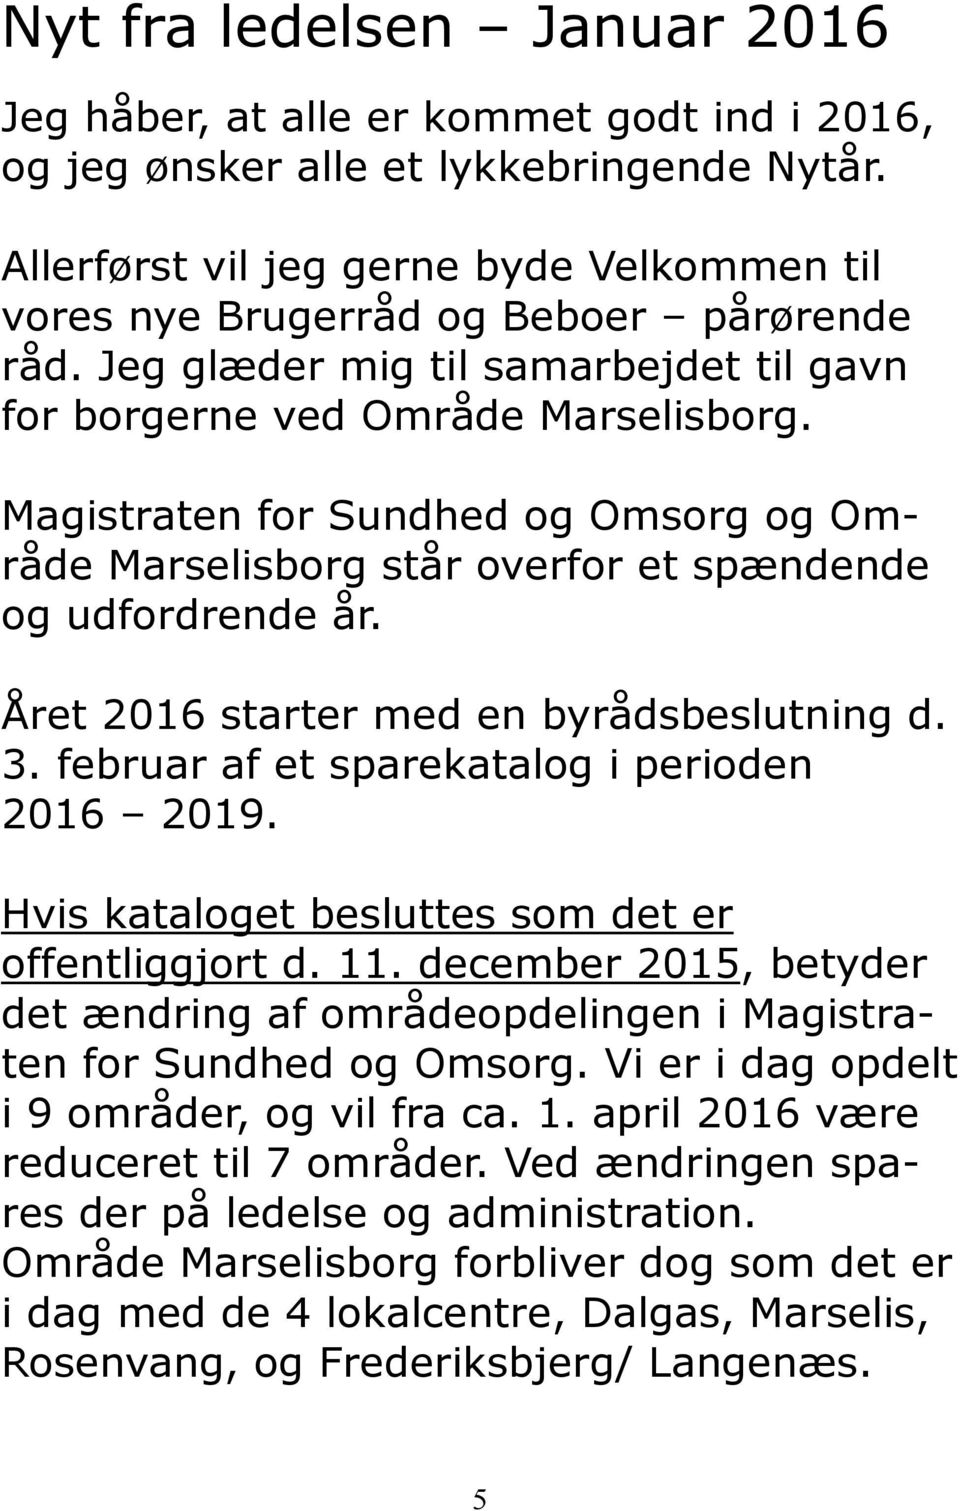 Magistraten for Sundhed og Omsorg og Område Marselisborg står overfor et spændende og udfordrende år. Året 2016 starter med en byrådsbeslutning d. 3. februar af et sparekatalog i perioden 2016 2019.